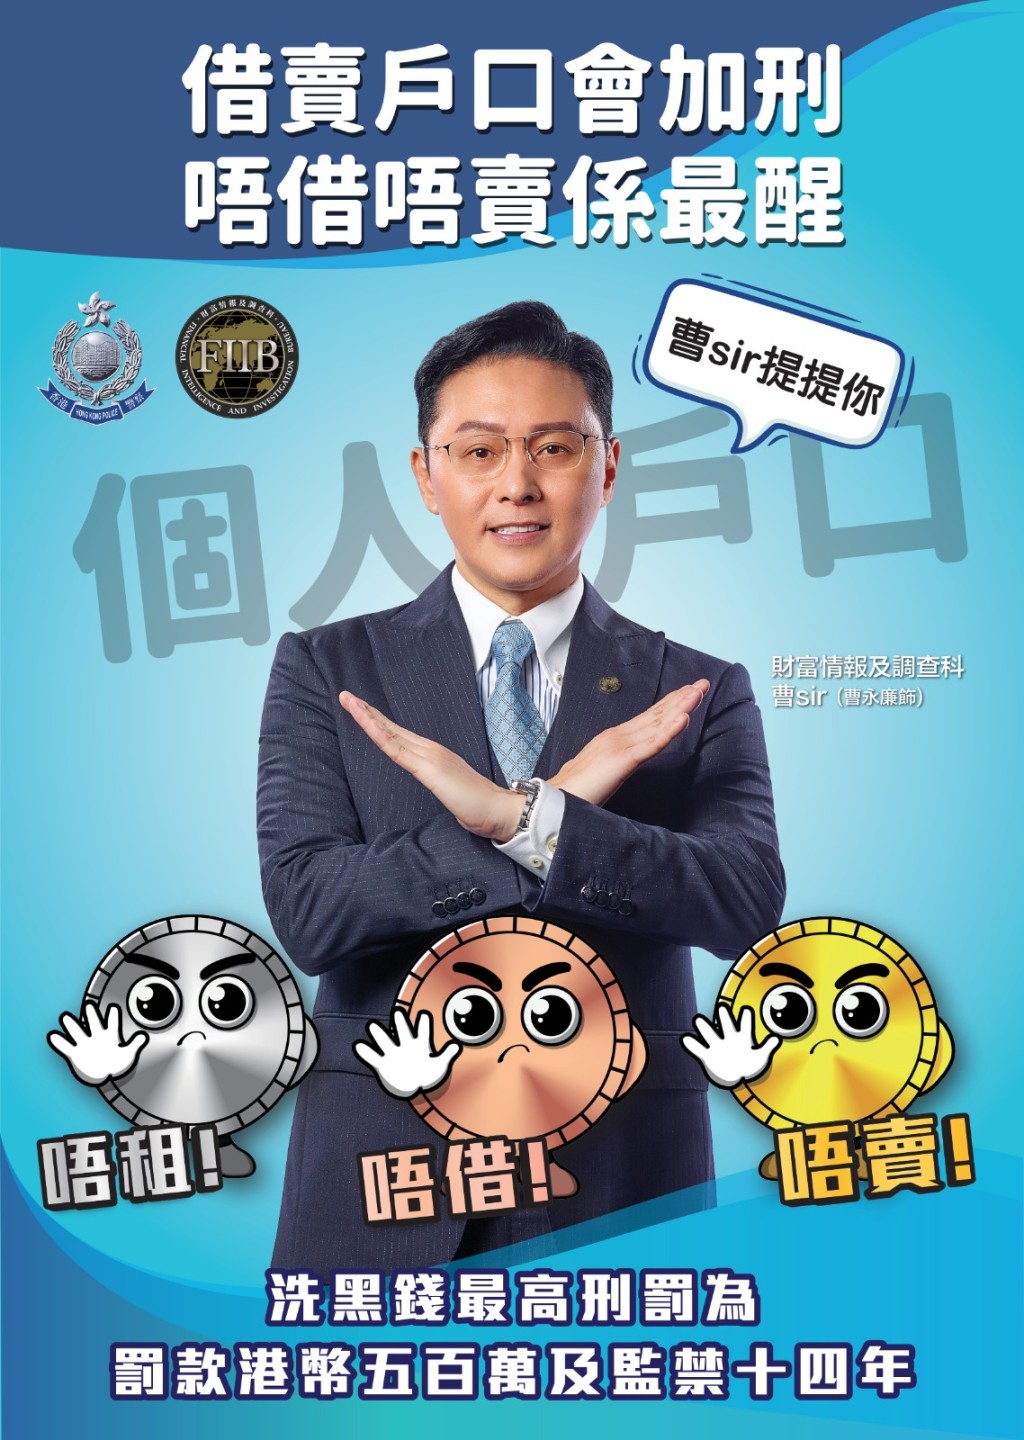 艺人曹永廉拍摄海报，提醒市民「唔租、唔借、唔卖」银行户口。